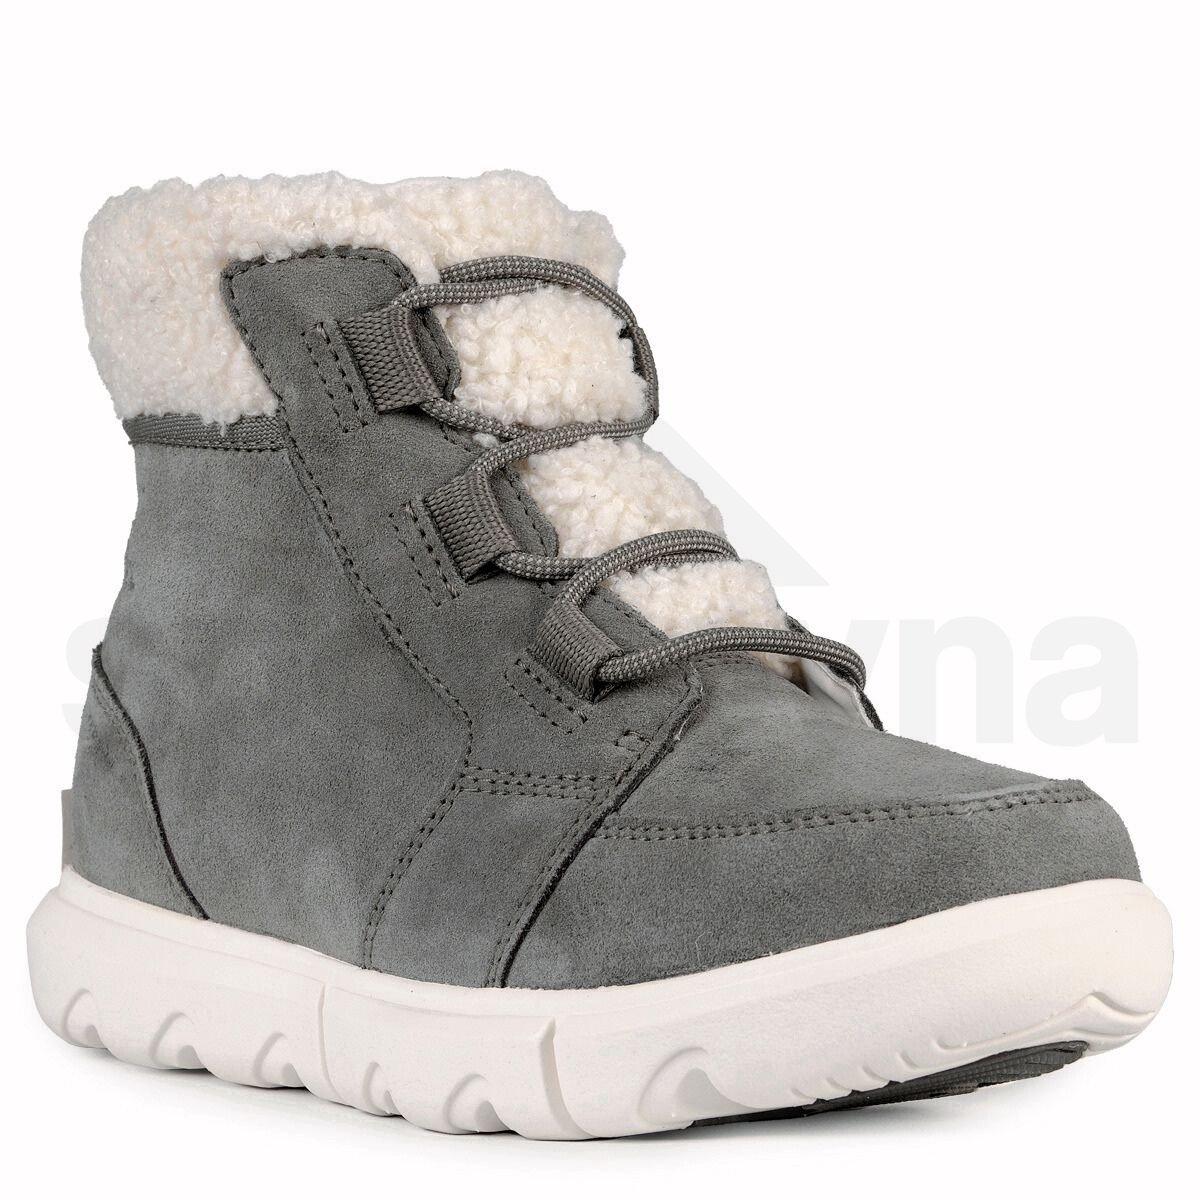 Dámské zimní boty Sorel Carnival Cozy WP W - šedá/bílá